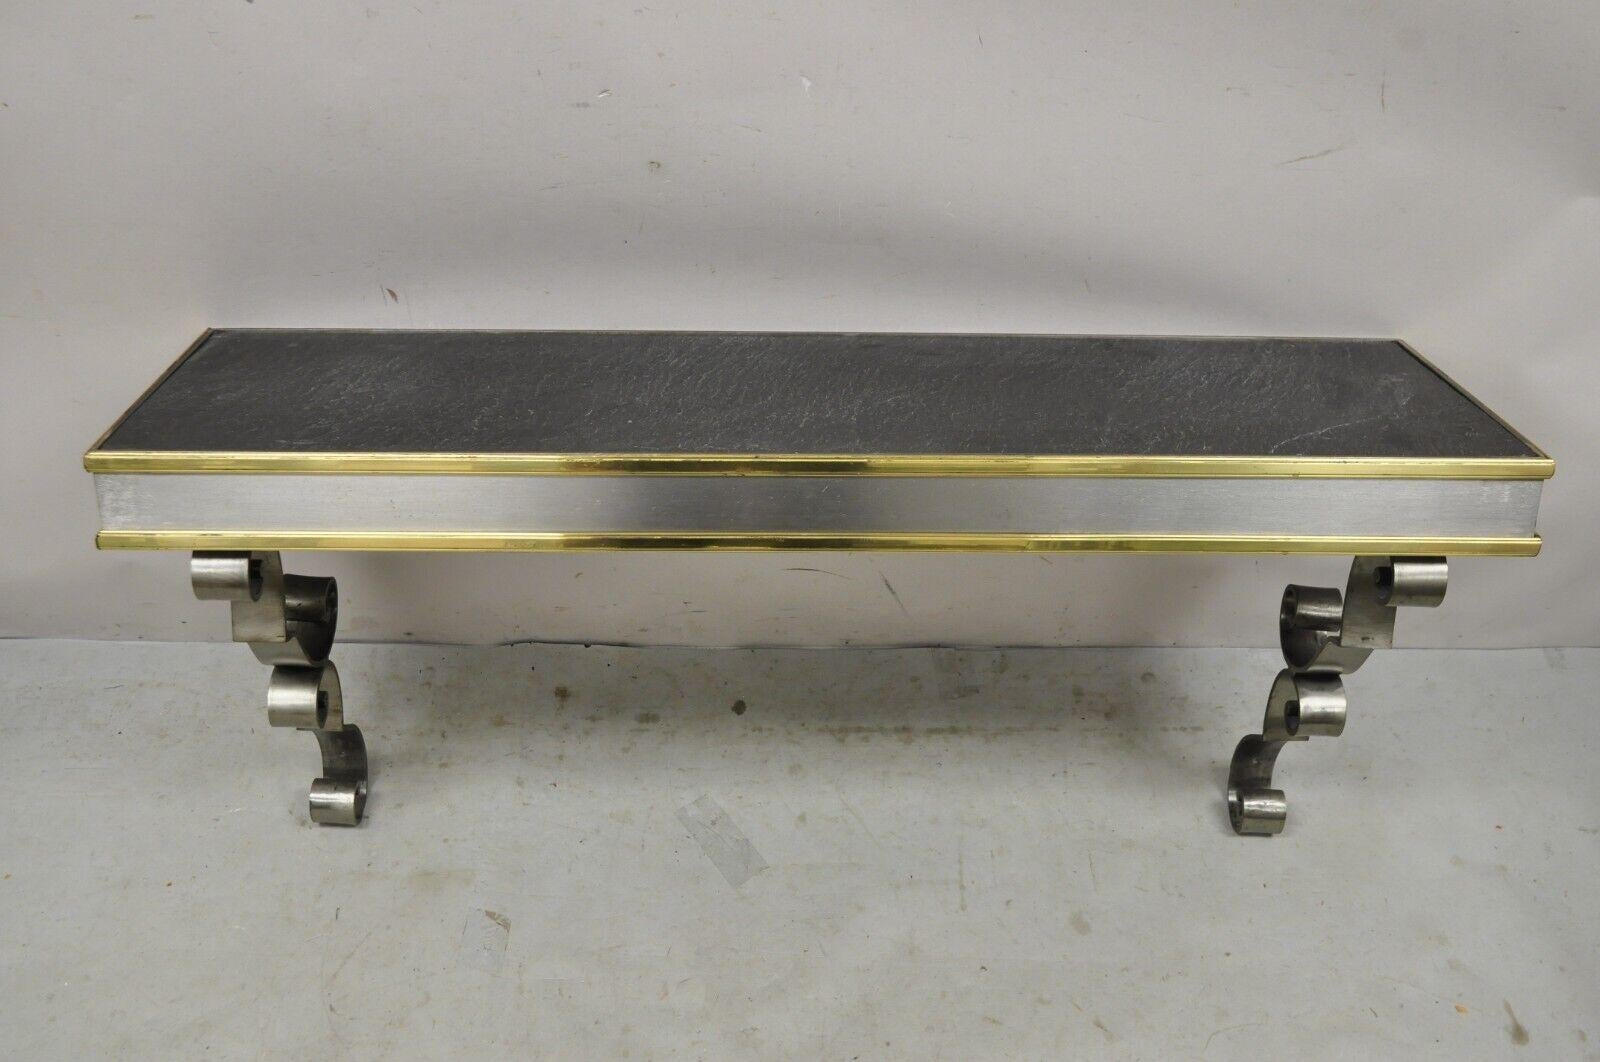 Vintage Italian Regency Steel and Brass Wall Mount Console Table with Slate Top. Les caractéristiques de l'article sont les suivantes : plateau rectangulaire en ardoise, cadre en métal du tabouret, accents en laiton, supports à volutes, très bel